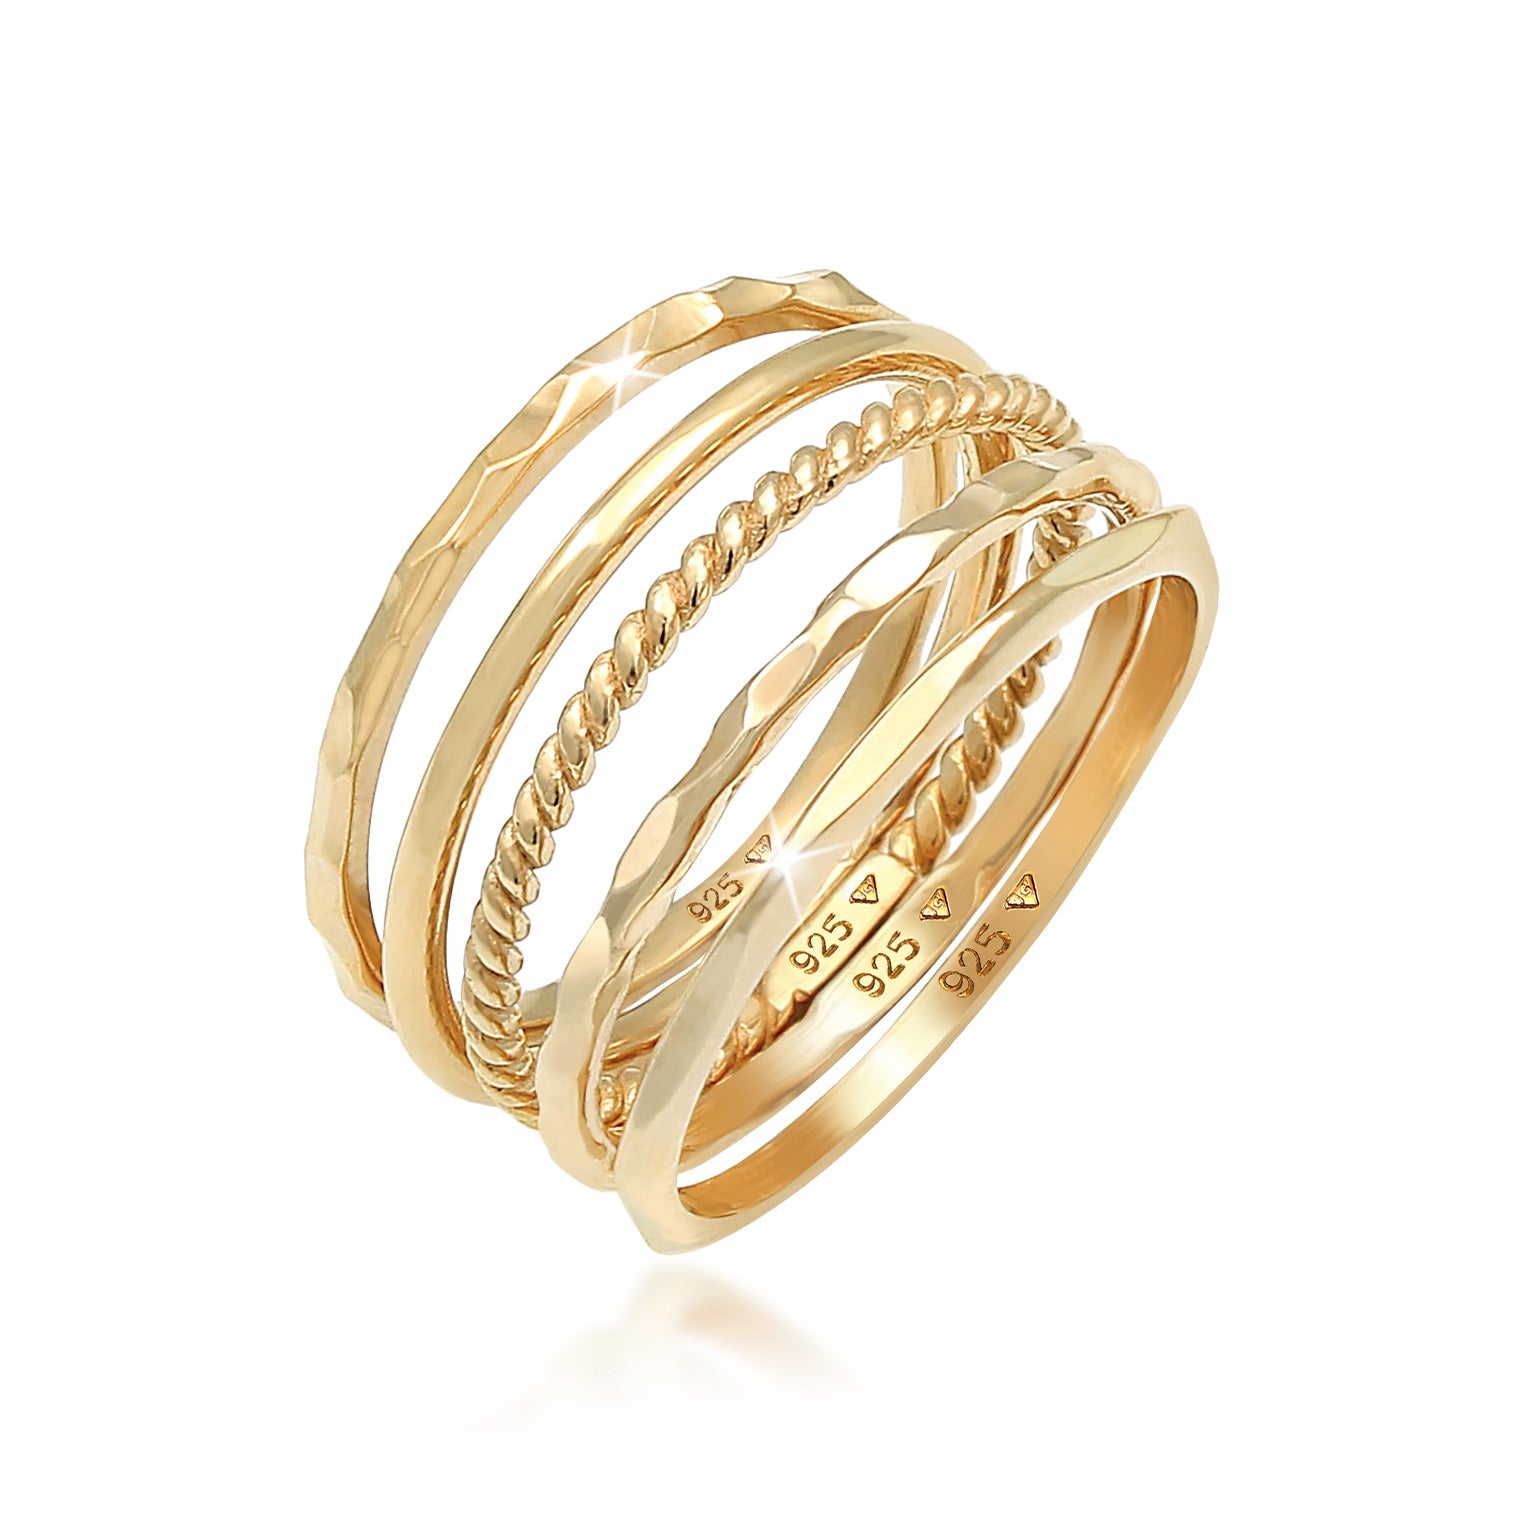 Ringe aus Silber oder Gold | bei Elli kaufen | TOP Auswahl – Elli Jewelry | Silberringe